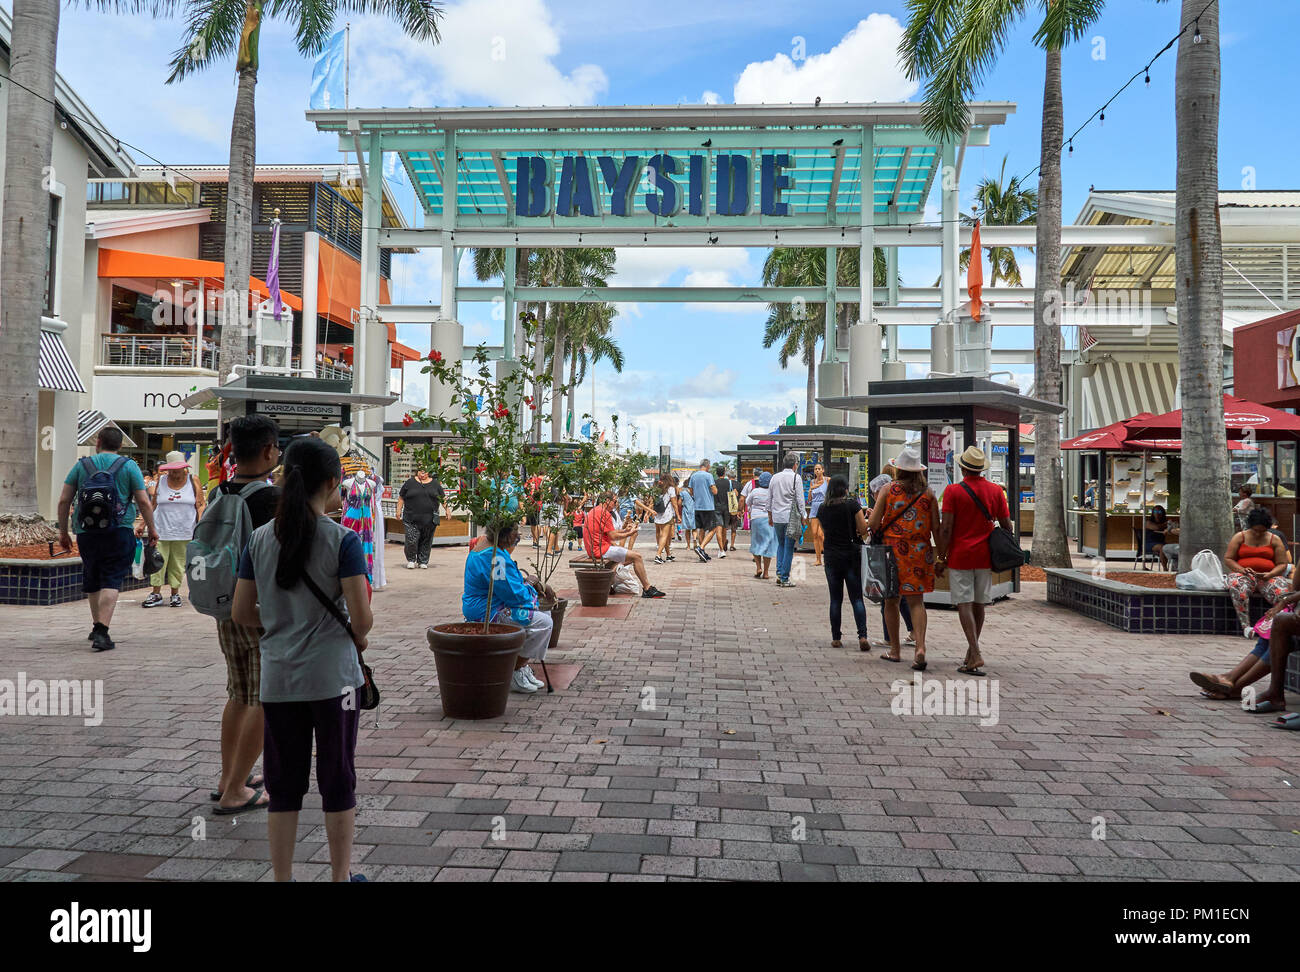 MIAMI, USA - 22 août 2018 : Bayside Marketplace sign in Miami. Bayside Marketplace est de deux étages du centre commercial en plein air situé dans le centre-ville de Mia Banque D'Images